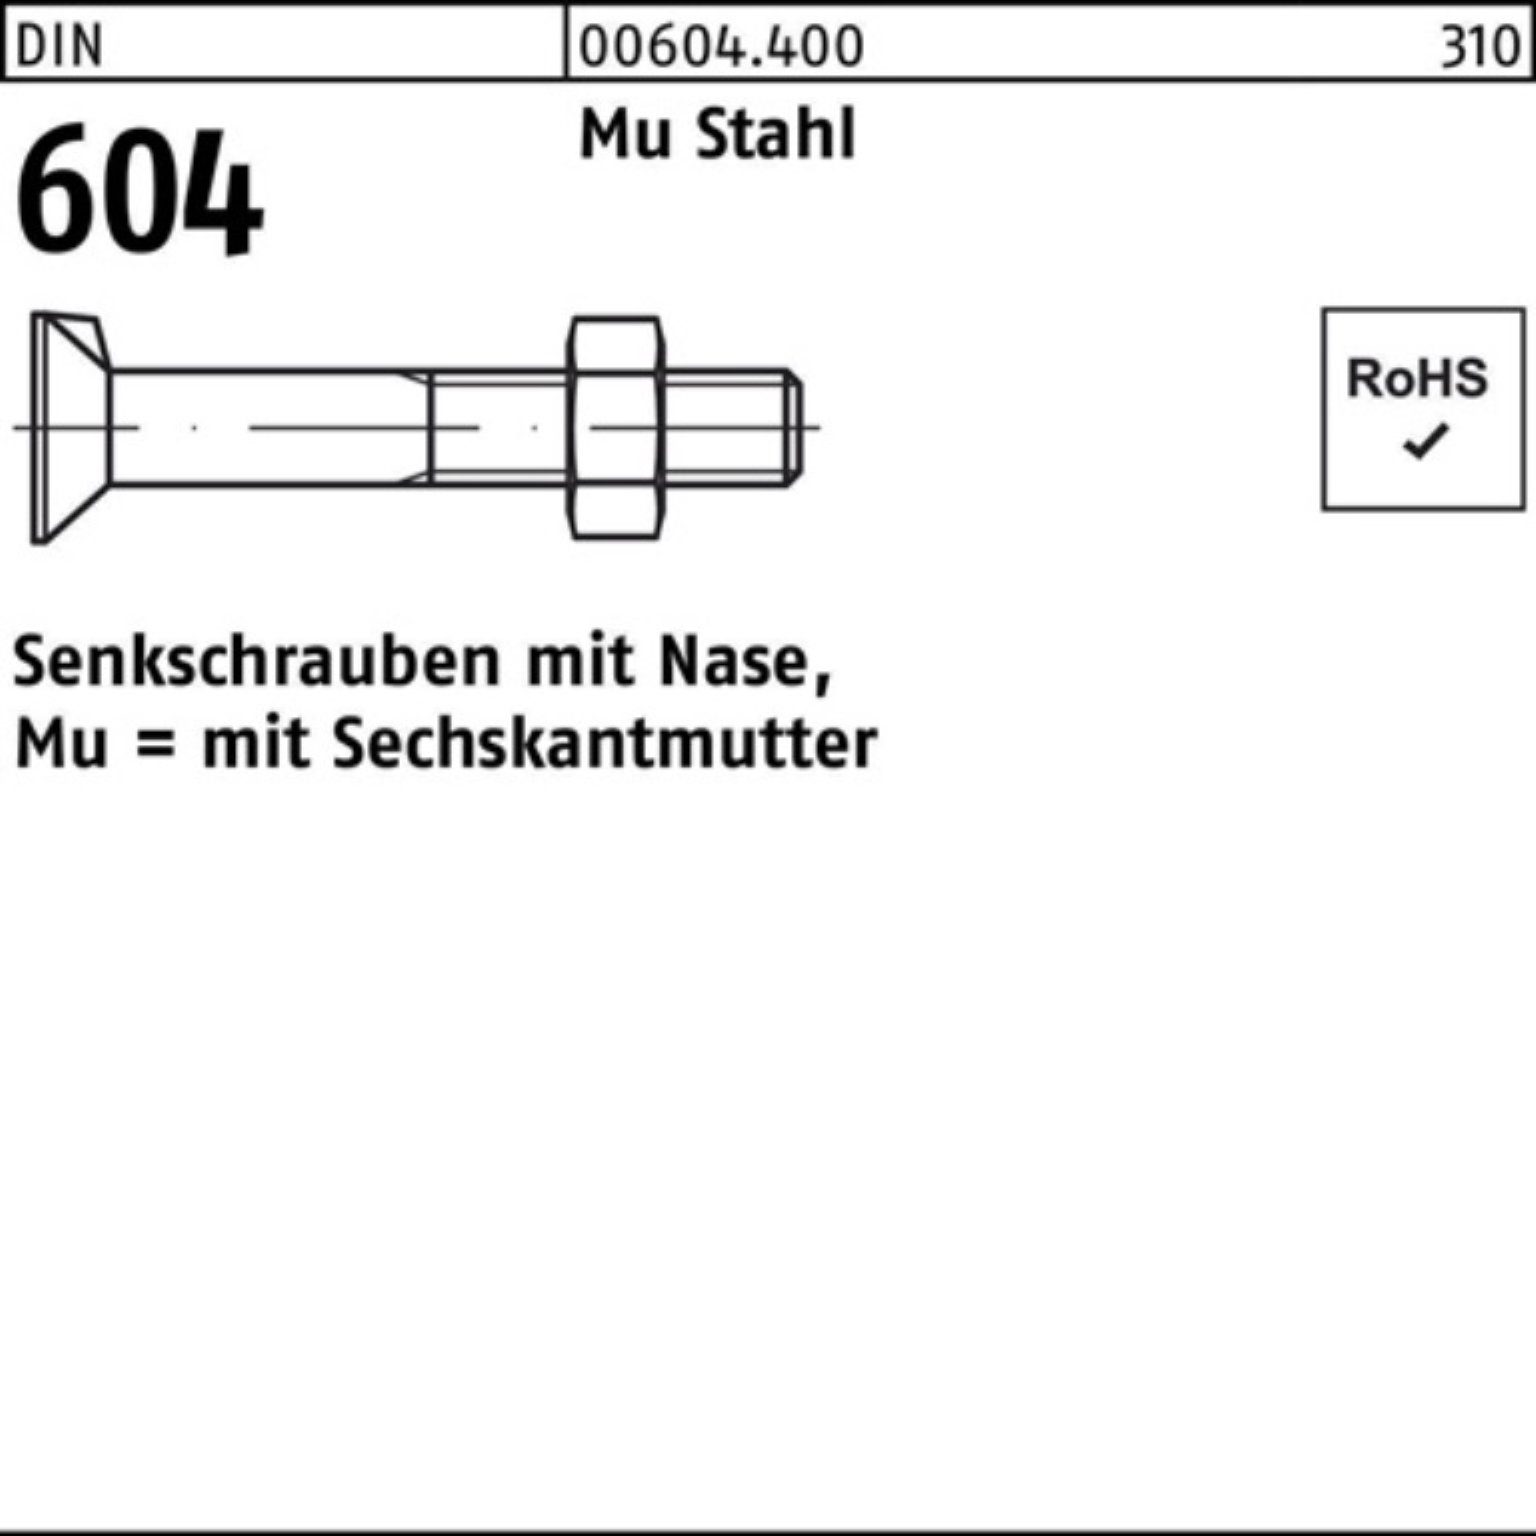 Senkschraube 200er Mu 604 4.6 Nase/6-ktmutter Reyher 20 DIN 35 M6x Senkschraube Stahl Pack